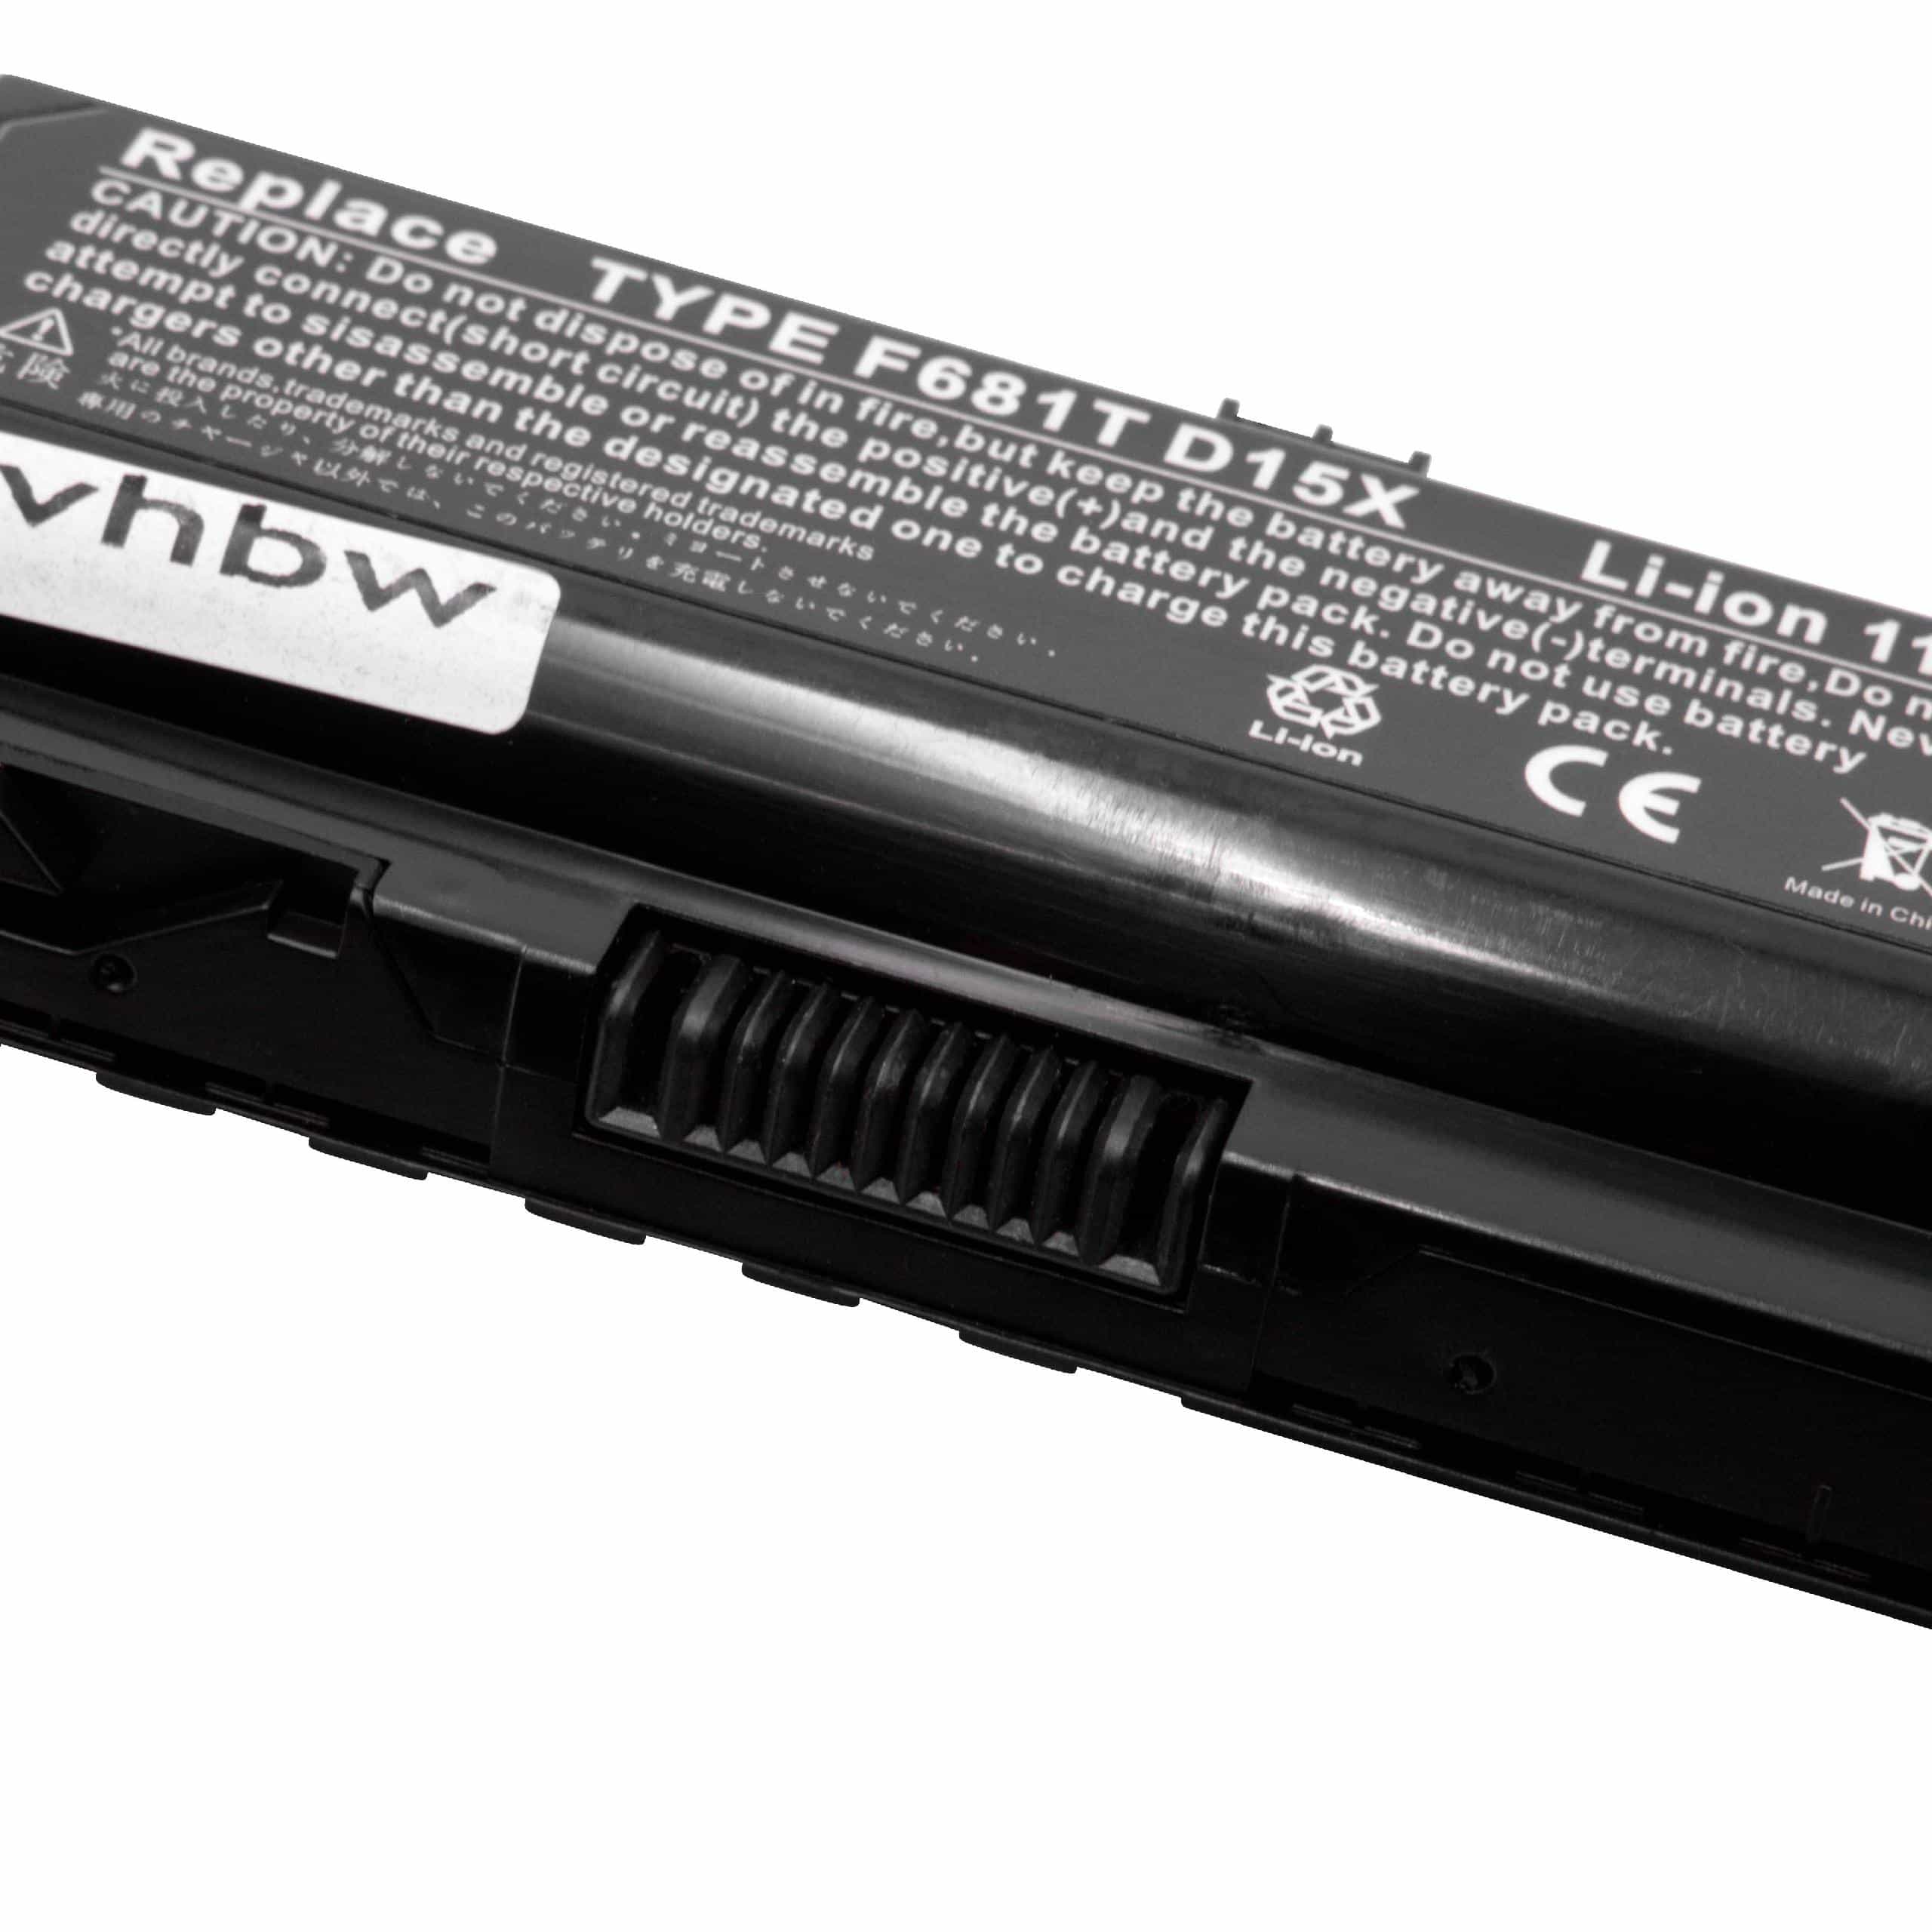 Akumulator do laptopa zamiennik Dell 0HC26Y, 0F681T, 0D951T, 312-0207, 0W3VX3 - 5200 mAh 11,1 V Li-Ion, czarny